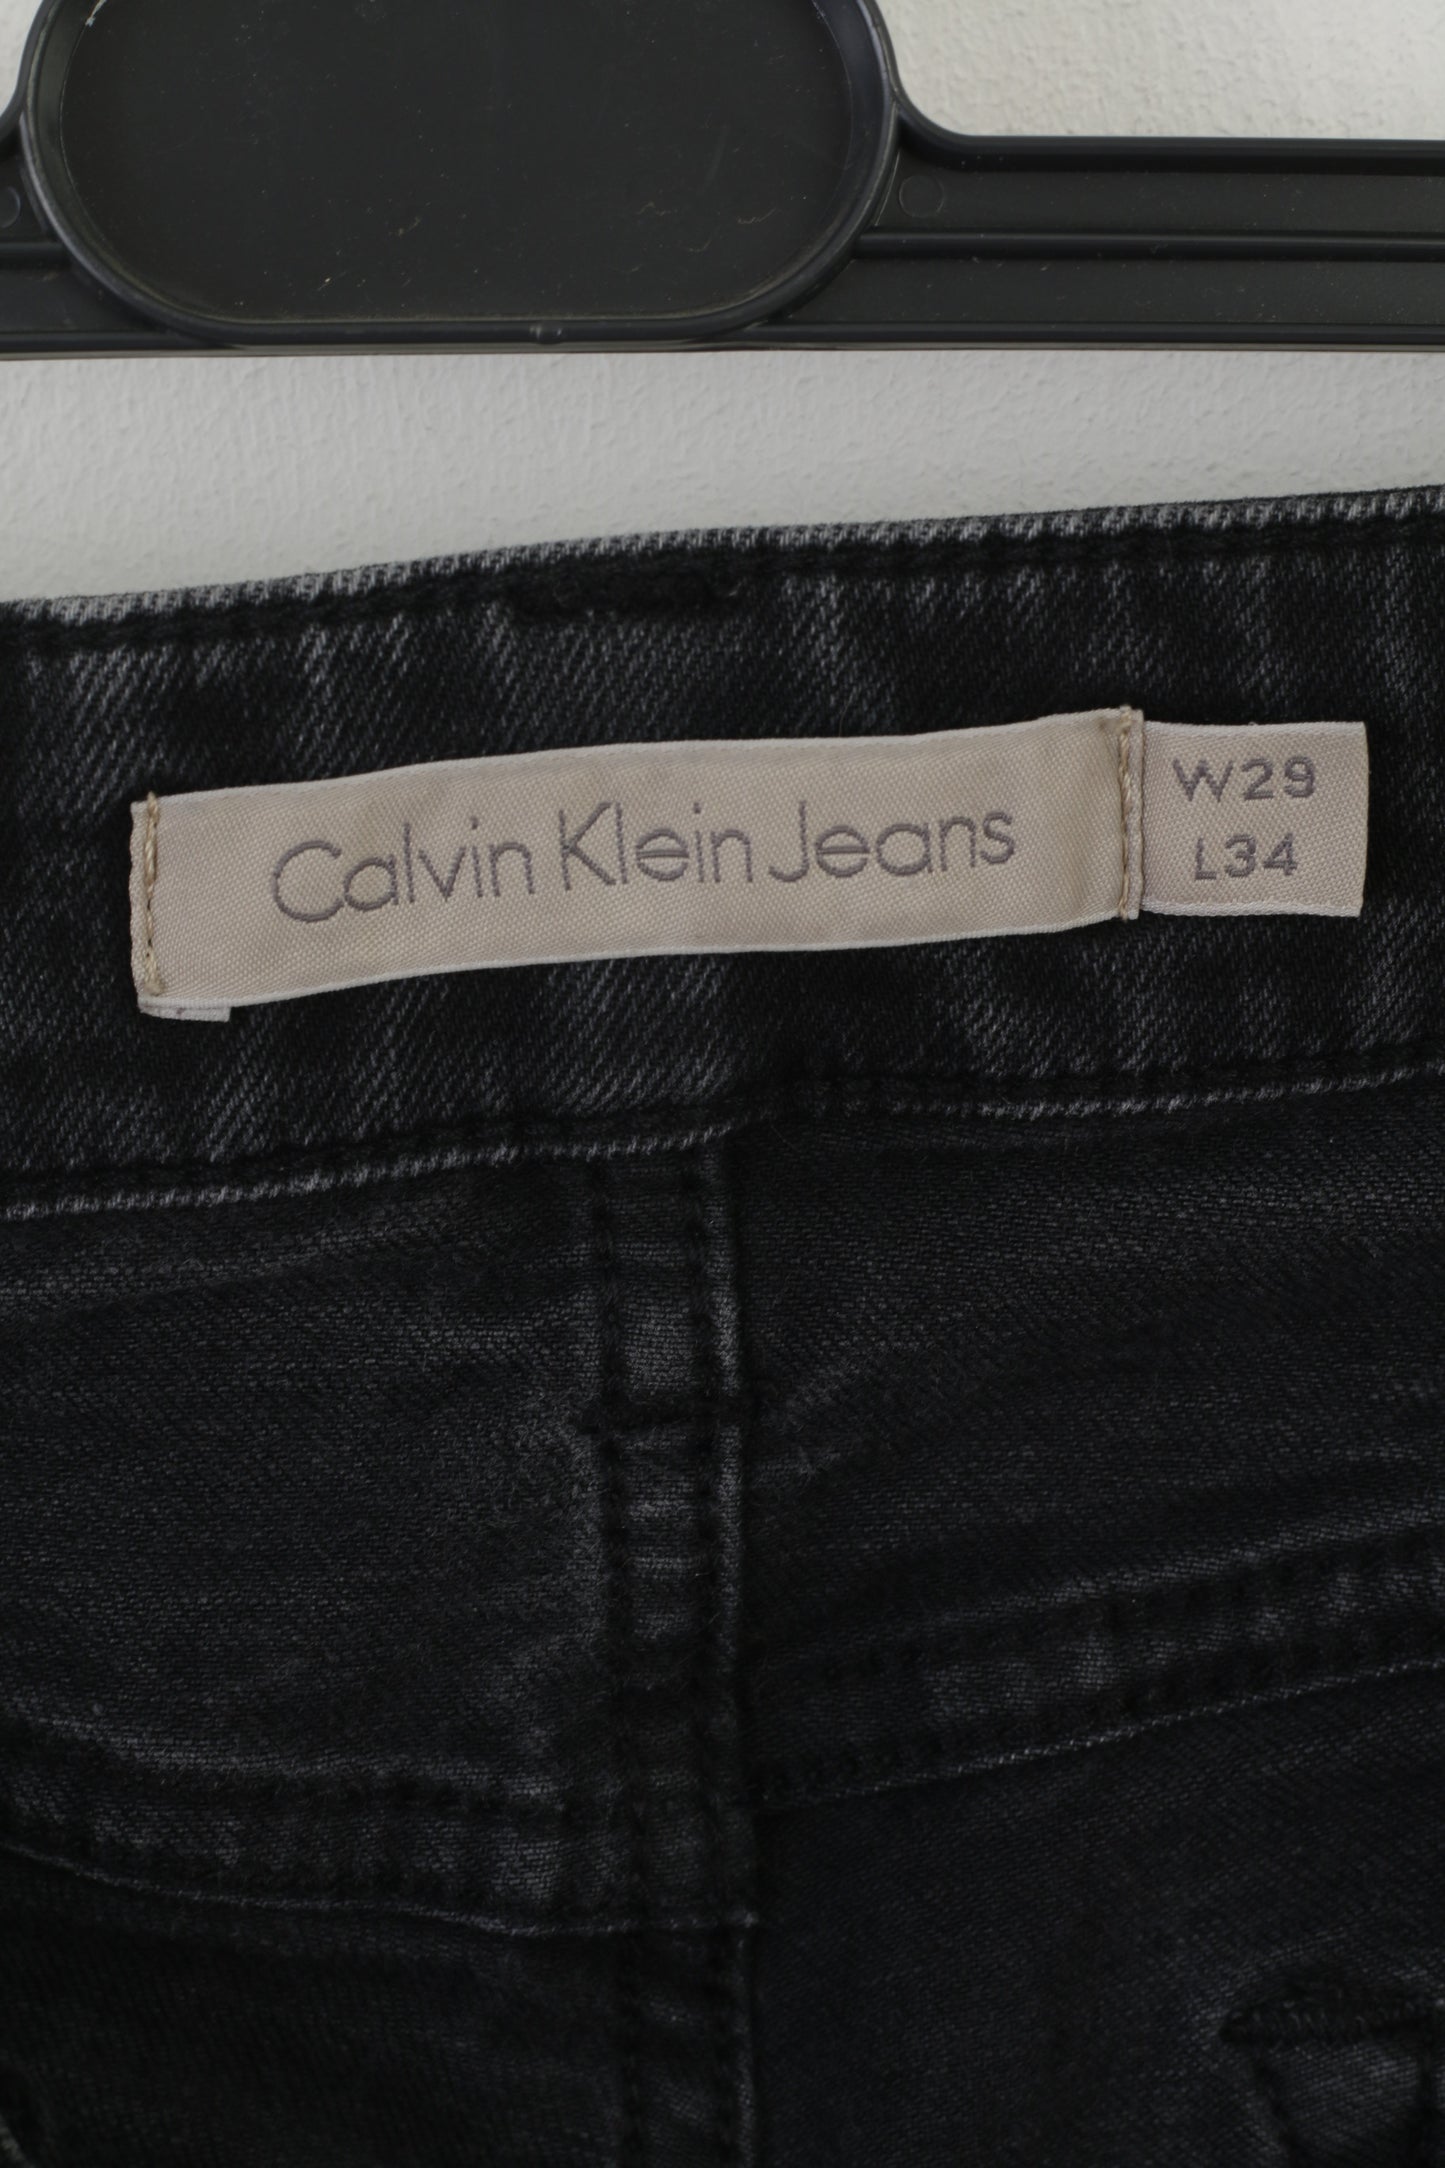 Calvin Klein Jeans Women 29 Trousers Black Cotton Long Skinny Stretch Pants